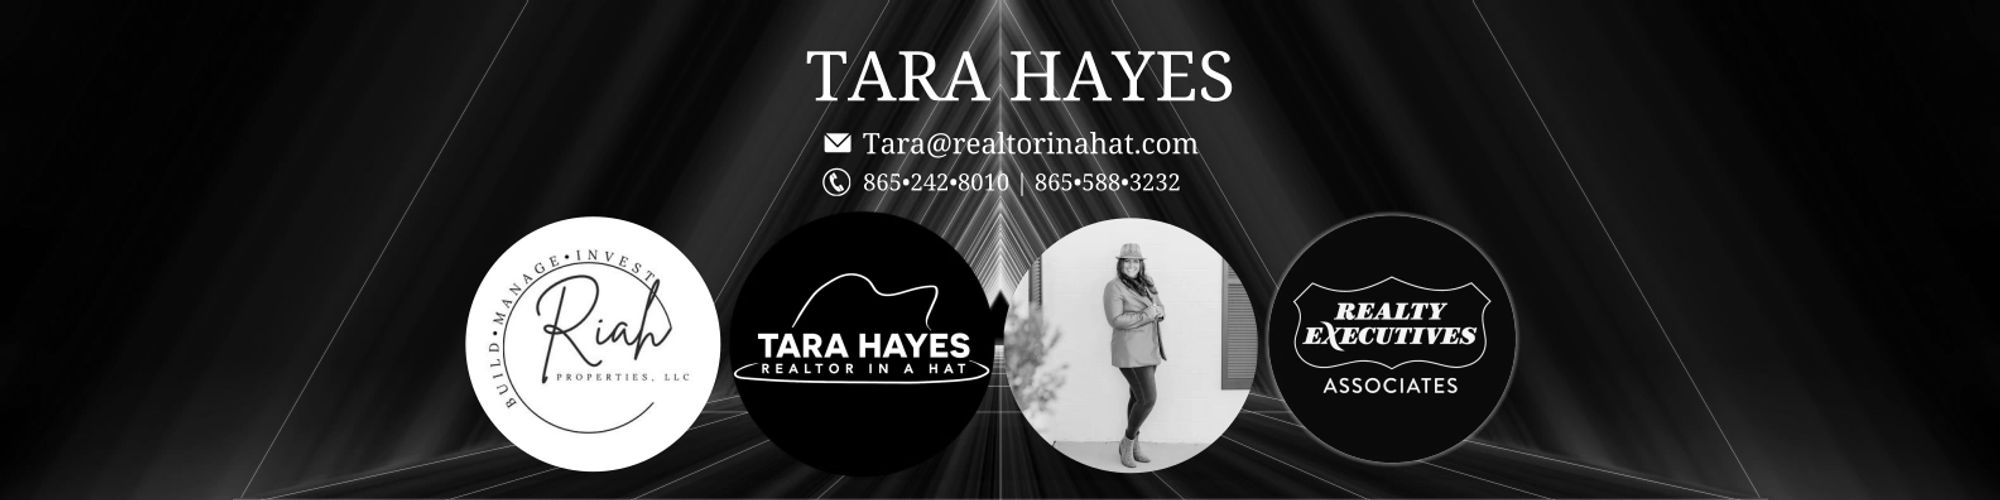 RIAH Properties, Realtor in a hat, Tara Hayes, Real Estate